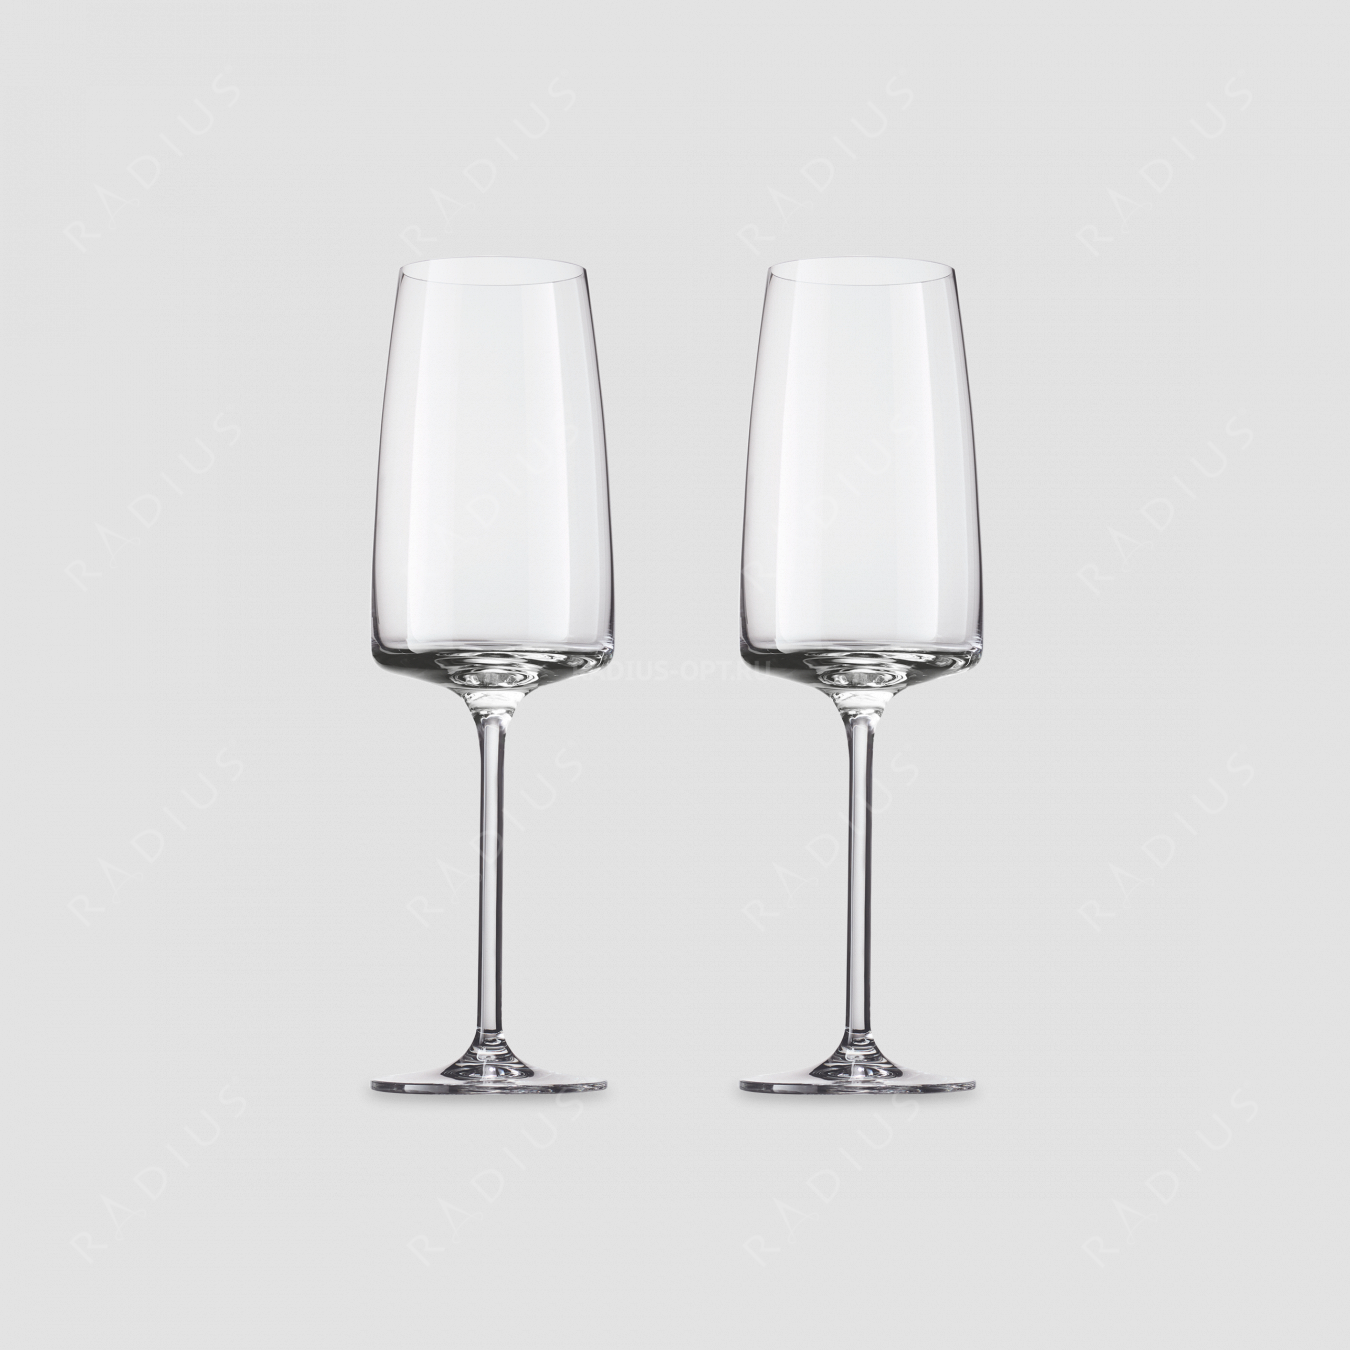 Набор бокалов для игристых вин Light and Fresh, объем 388 мл, 2 шт, серия Vivid Senses, ZWIESEL GLAS, Германия